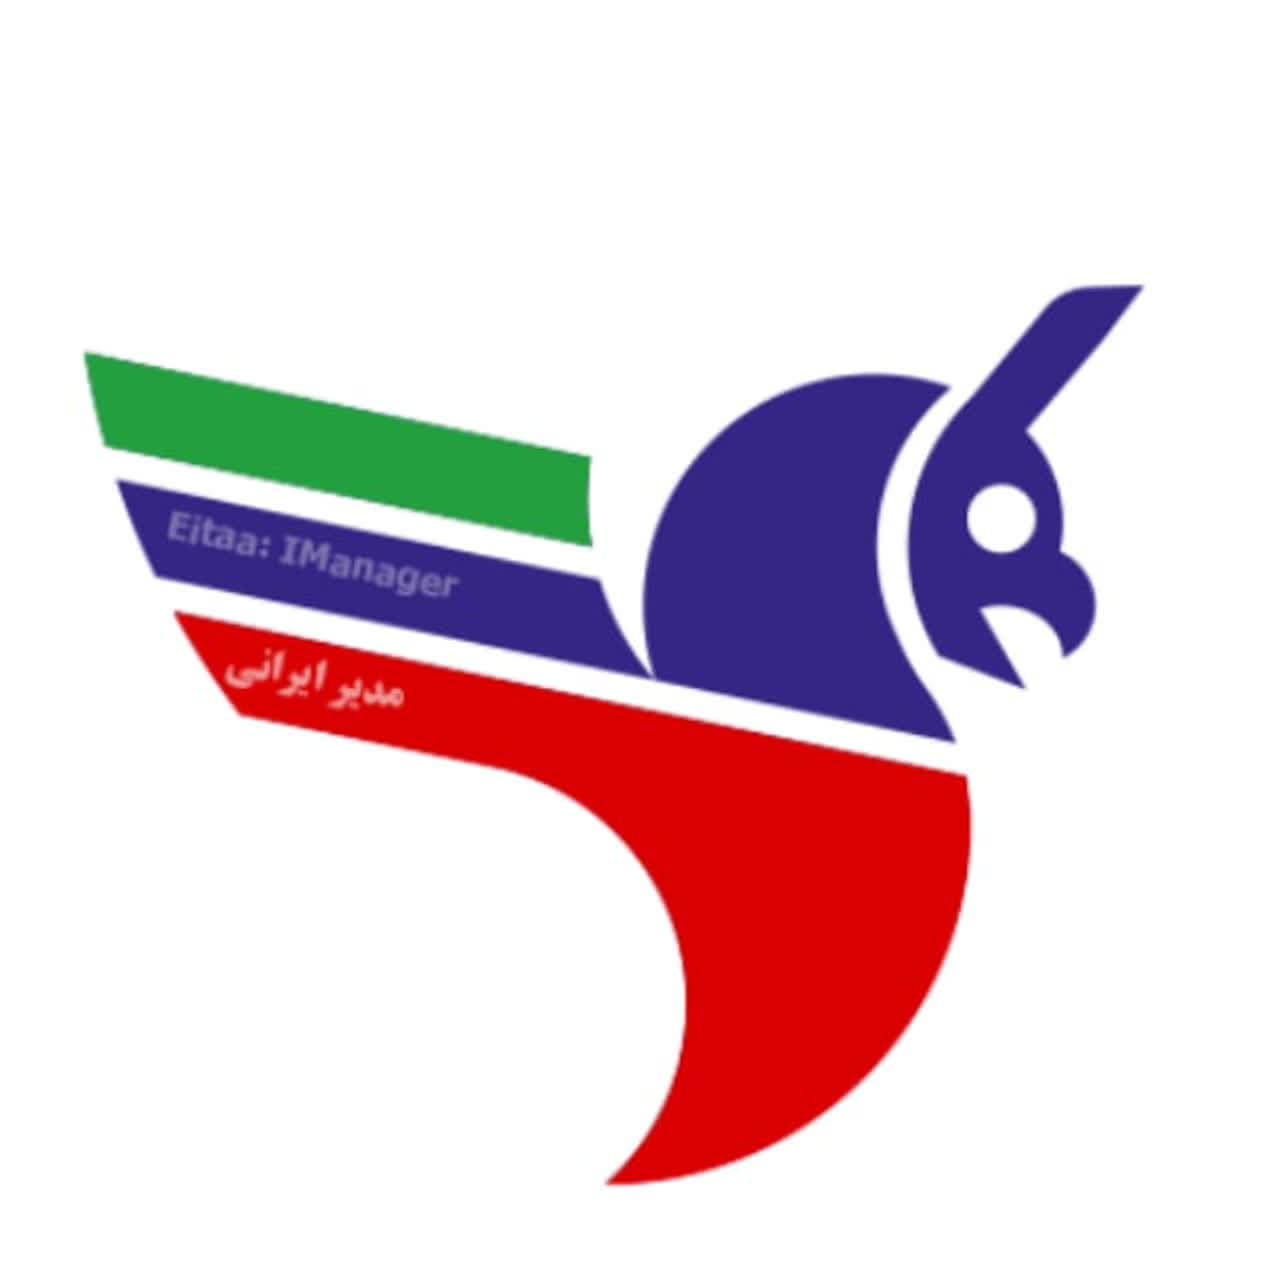 آموزش فروش | مدیر ایرانی